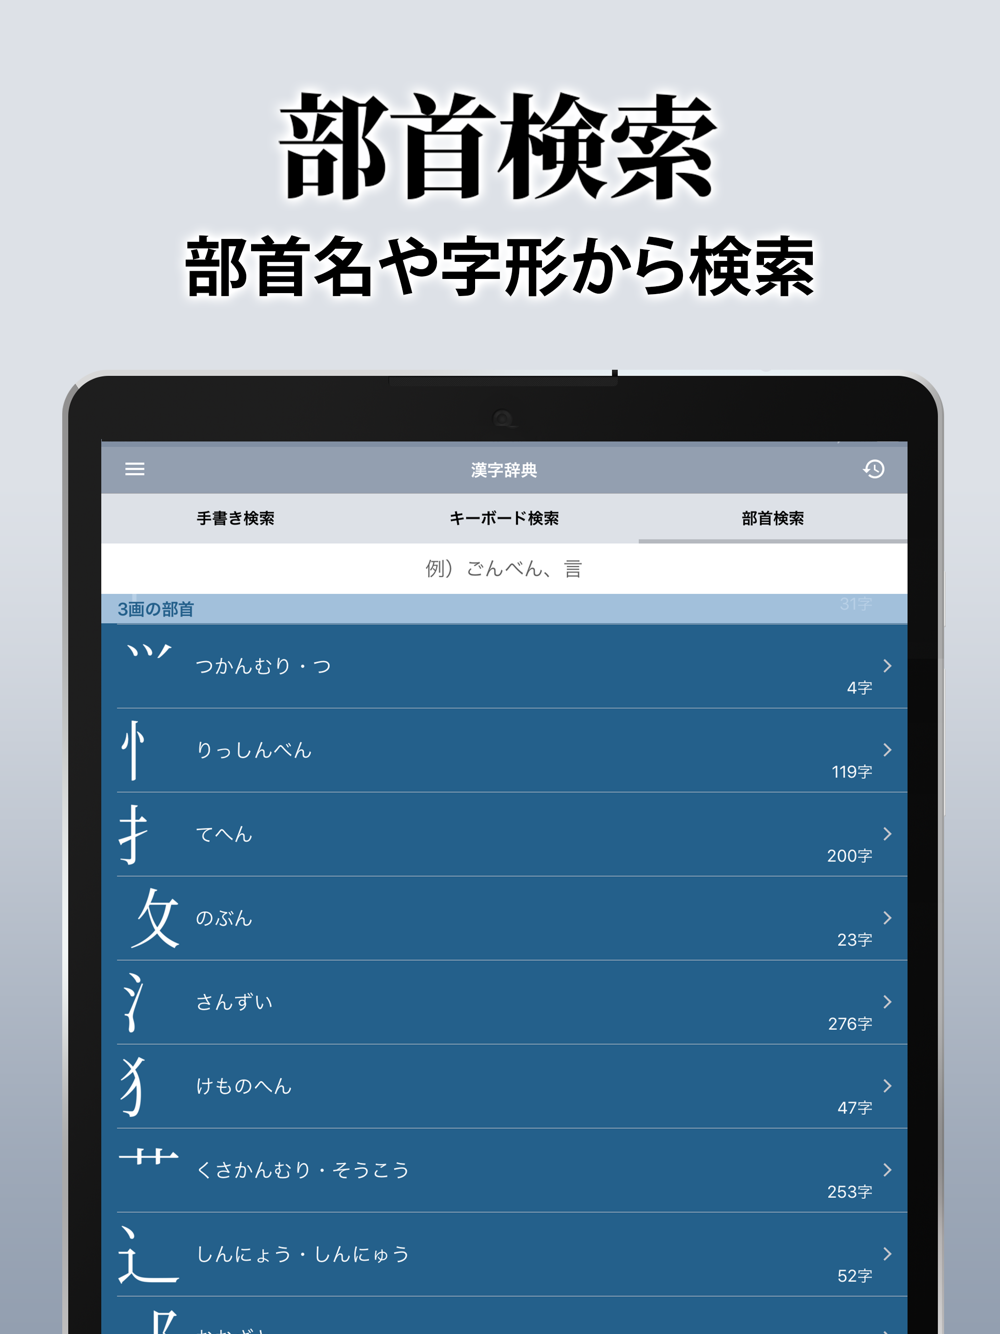 漢字辞典 手書き漢字検索アプリ Free Download App For Iphone Steprimo Com